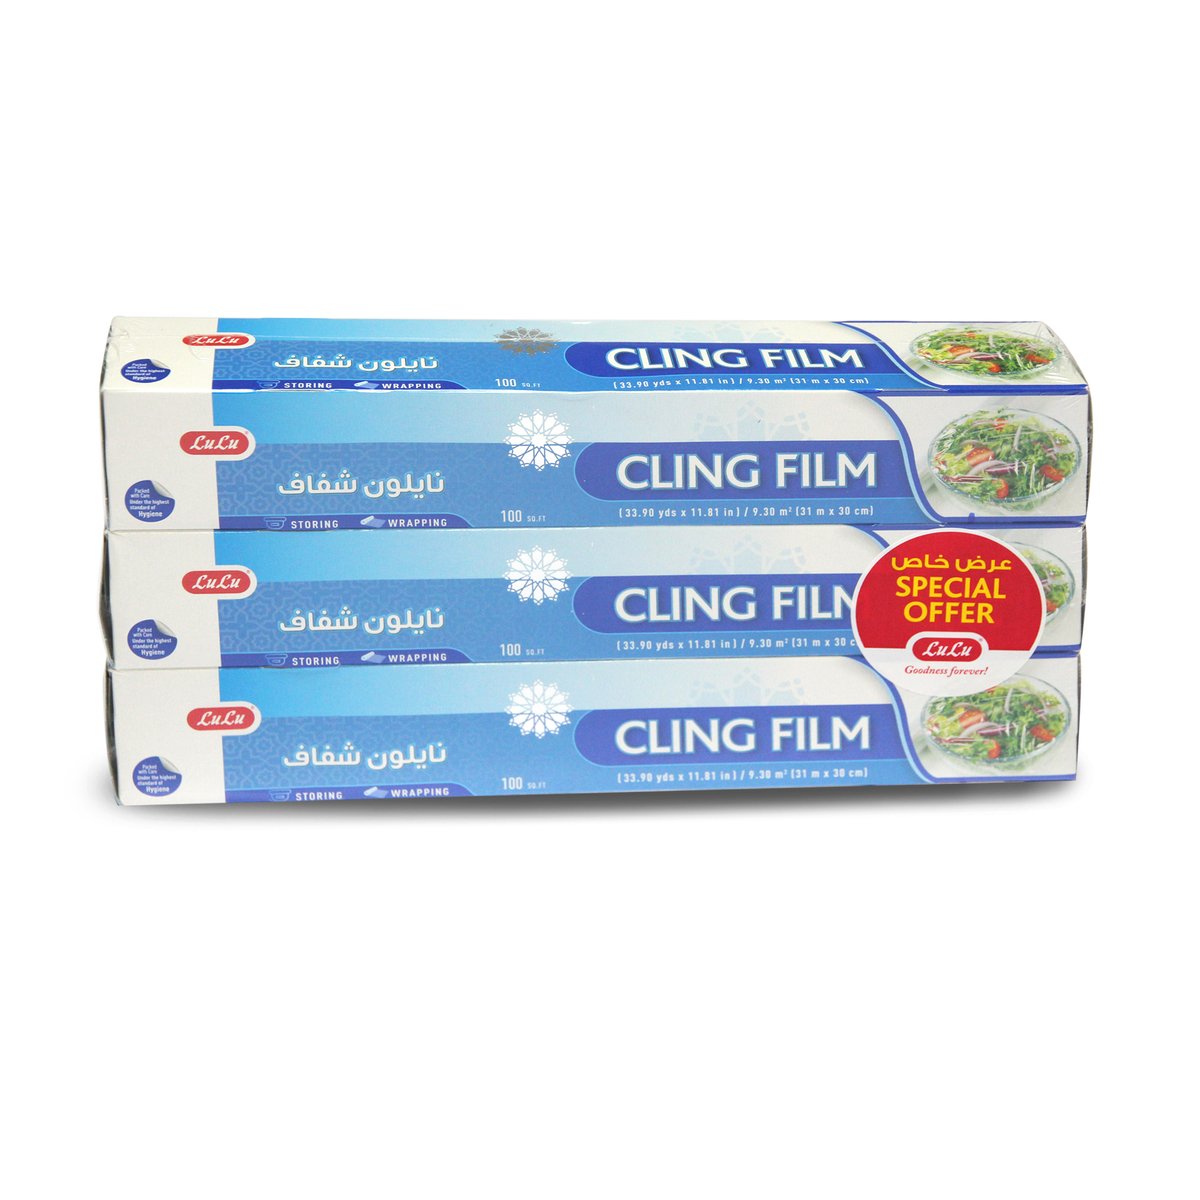 LuLu Cling Film Size 31m x 30cm 100sq.ft 3pcs